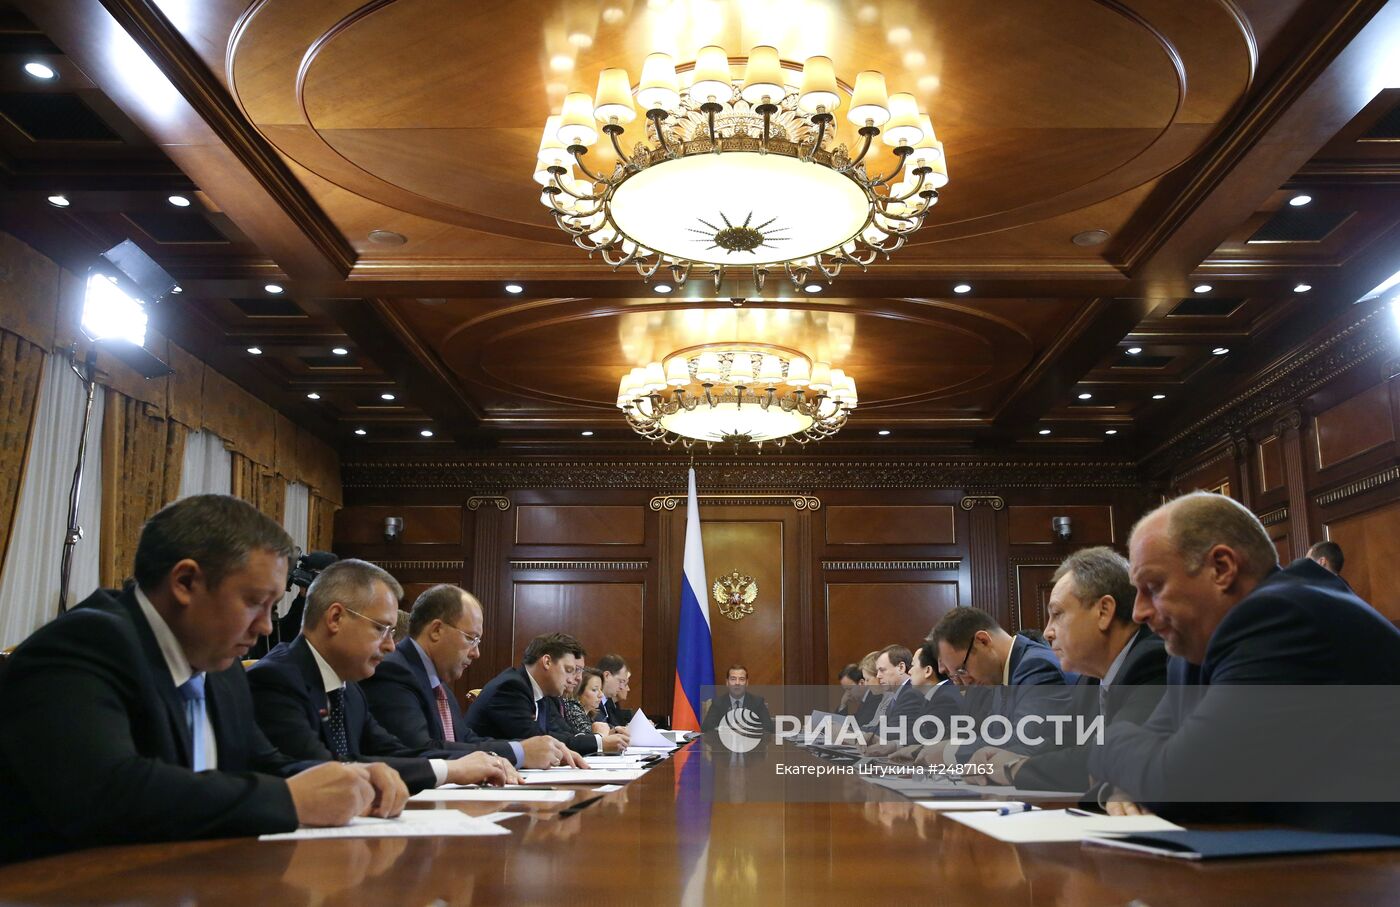 Д.Медведев проводит совещание по развитию выездного туризма